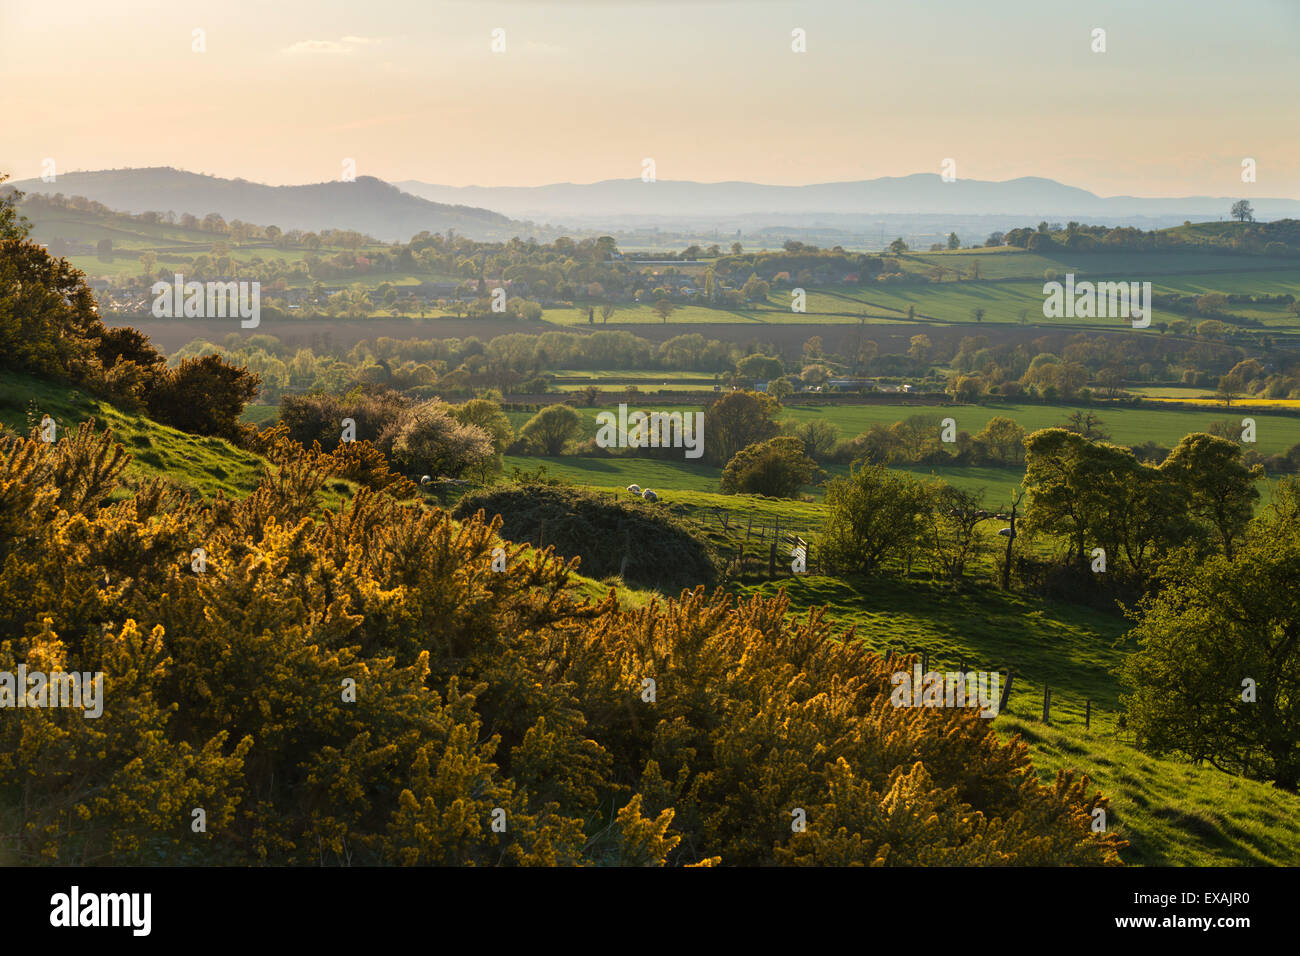 Paysage Cotswold avec vue sur collines de Malvern, près de Winchcombe, Cotswolds, Gloucestershire, Angleterre, Royaume-Uni, Europe Banque D'Images